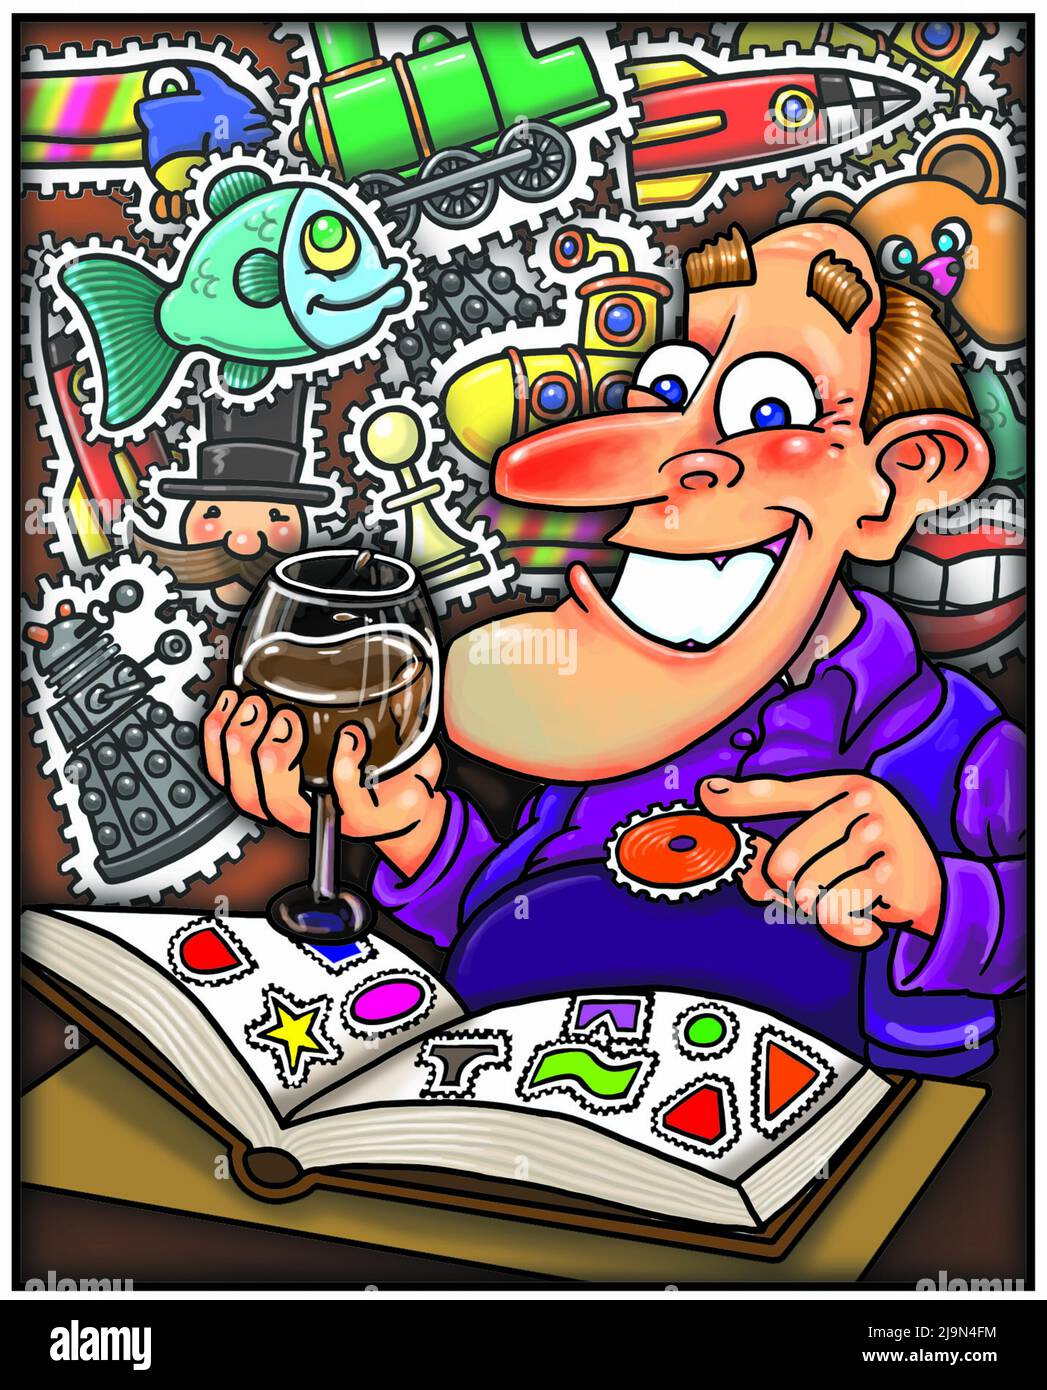 Zeichentrickkunst, die einen Mann zeigt, der ein Sammelalbum zusammenstellt und den Spaß des Sammelns als Freizeitbeschäftigung, Sammeln, Hobby, Freizeitbeschäftigung veranschaulicht Stockfoto